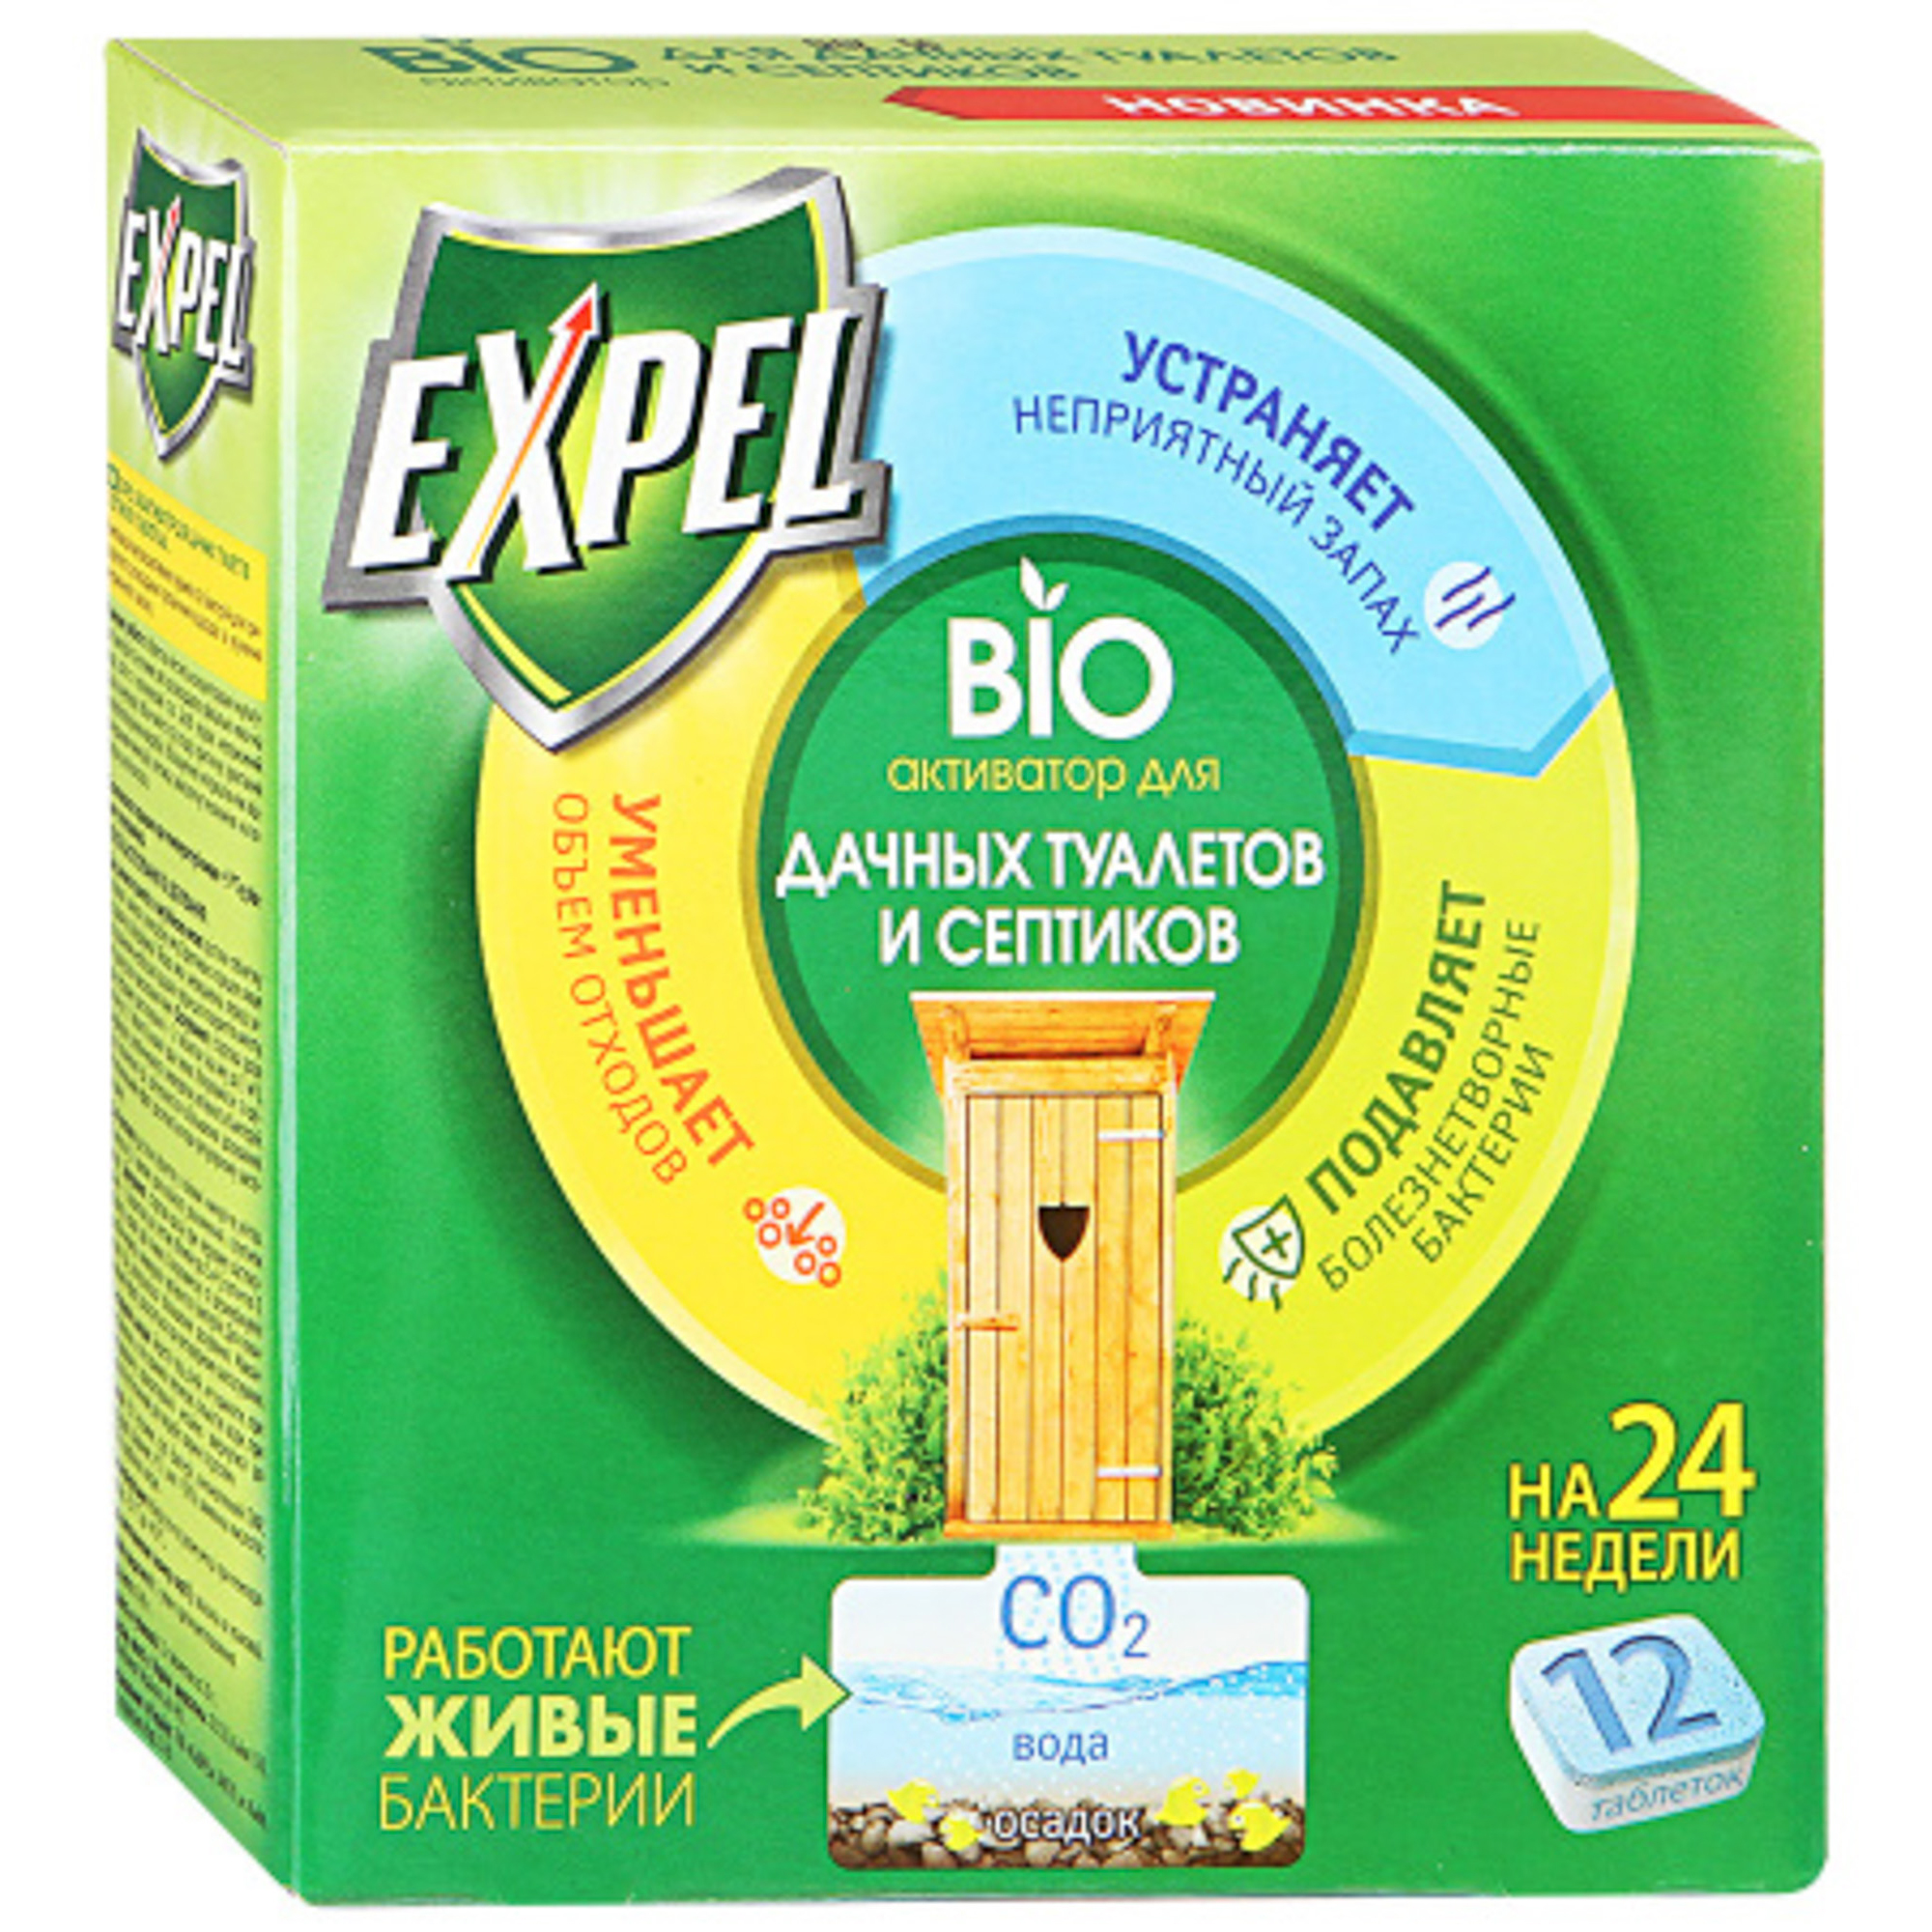 фото Биоактиватор expel для дачных туалетов и септиков, таблетки в картонной упаковке, 12шт.